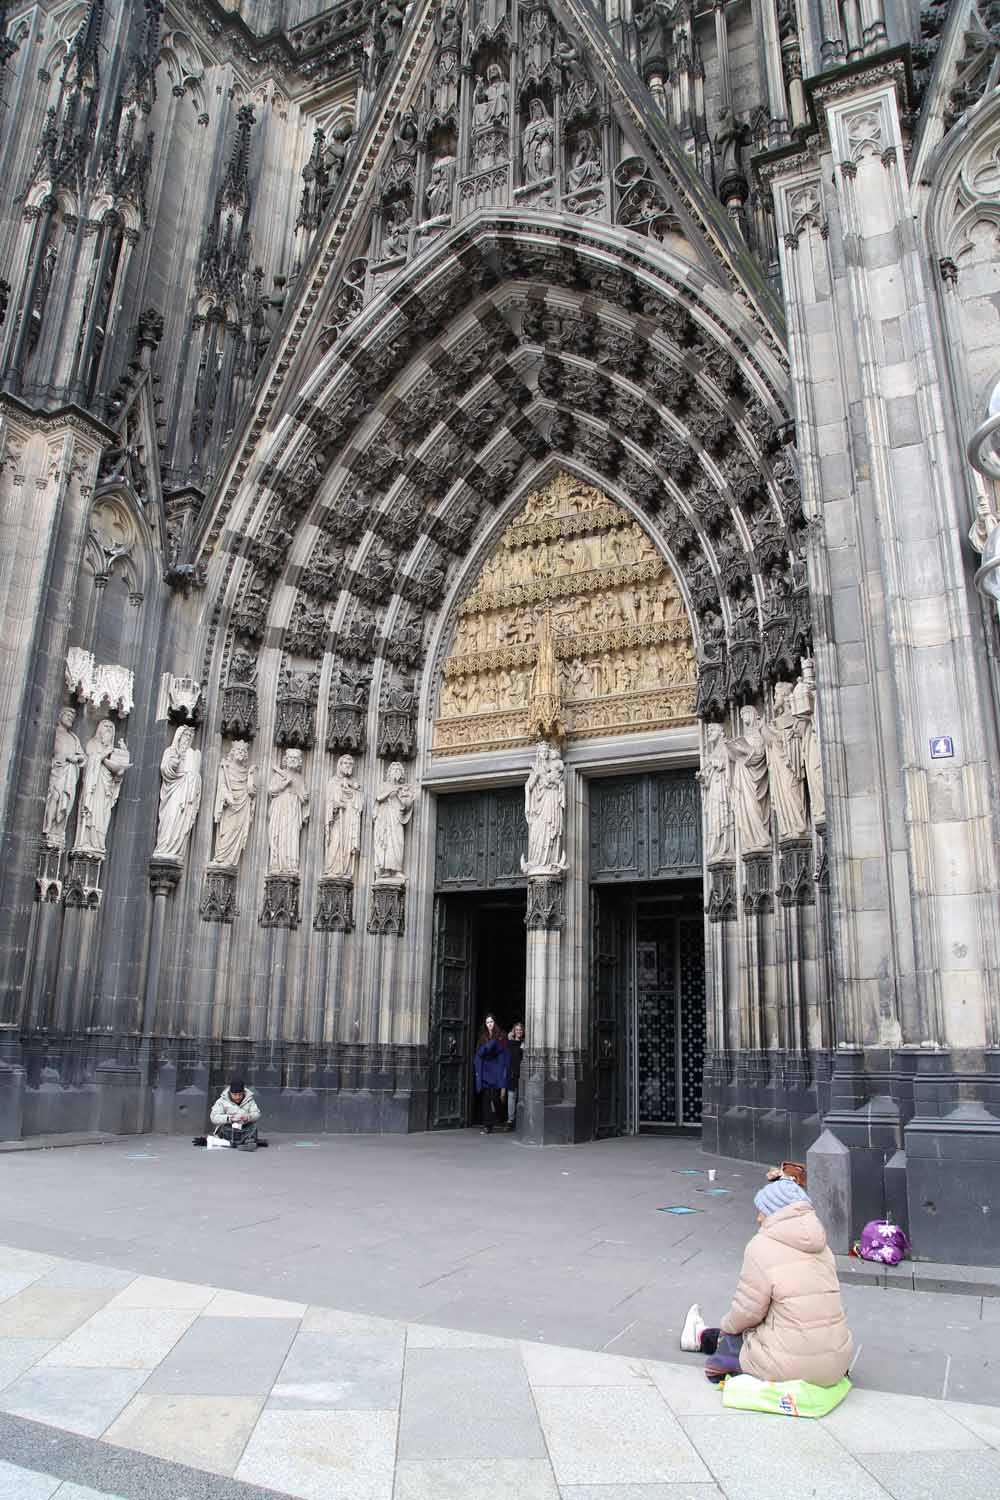 聖堂 ケルン 大 ドイツの世界遺産「ケルン大聖堂」の見どころと歩き方